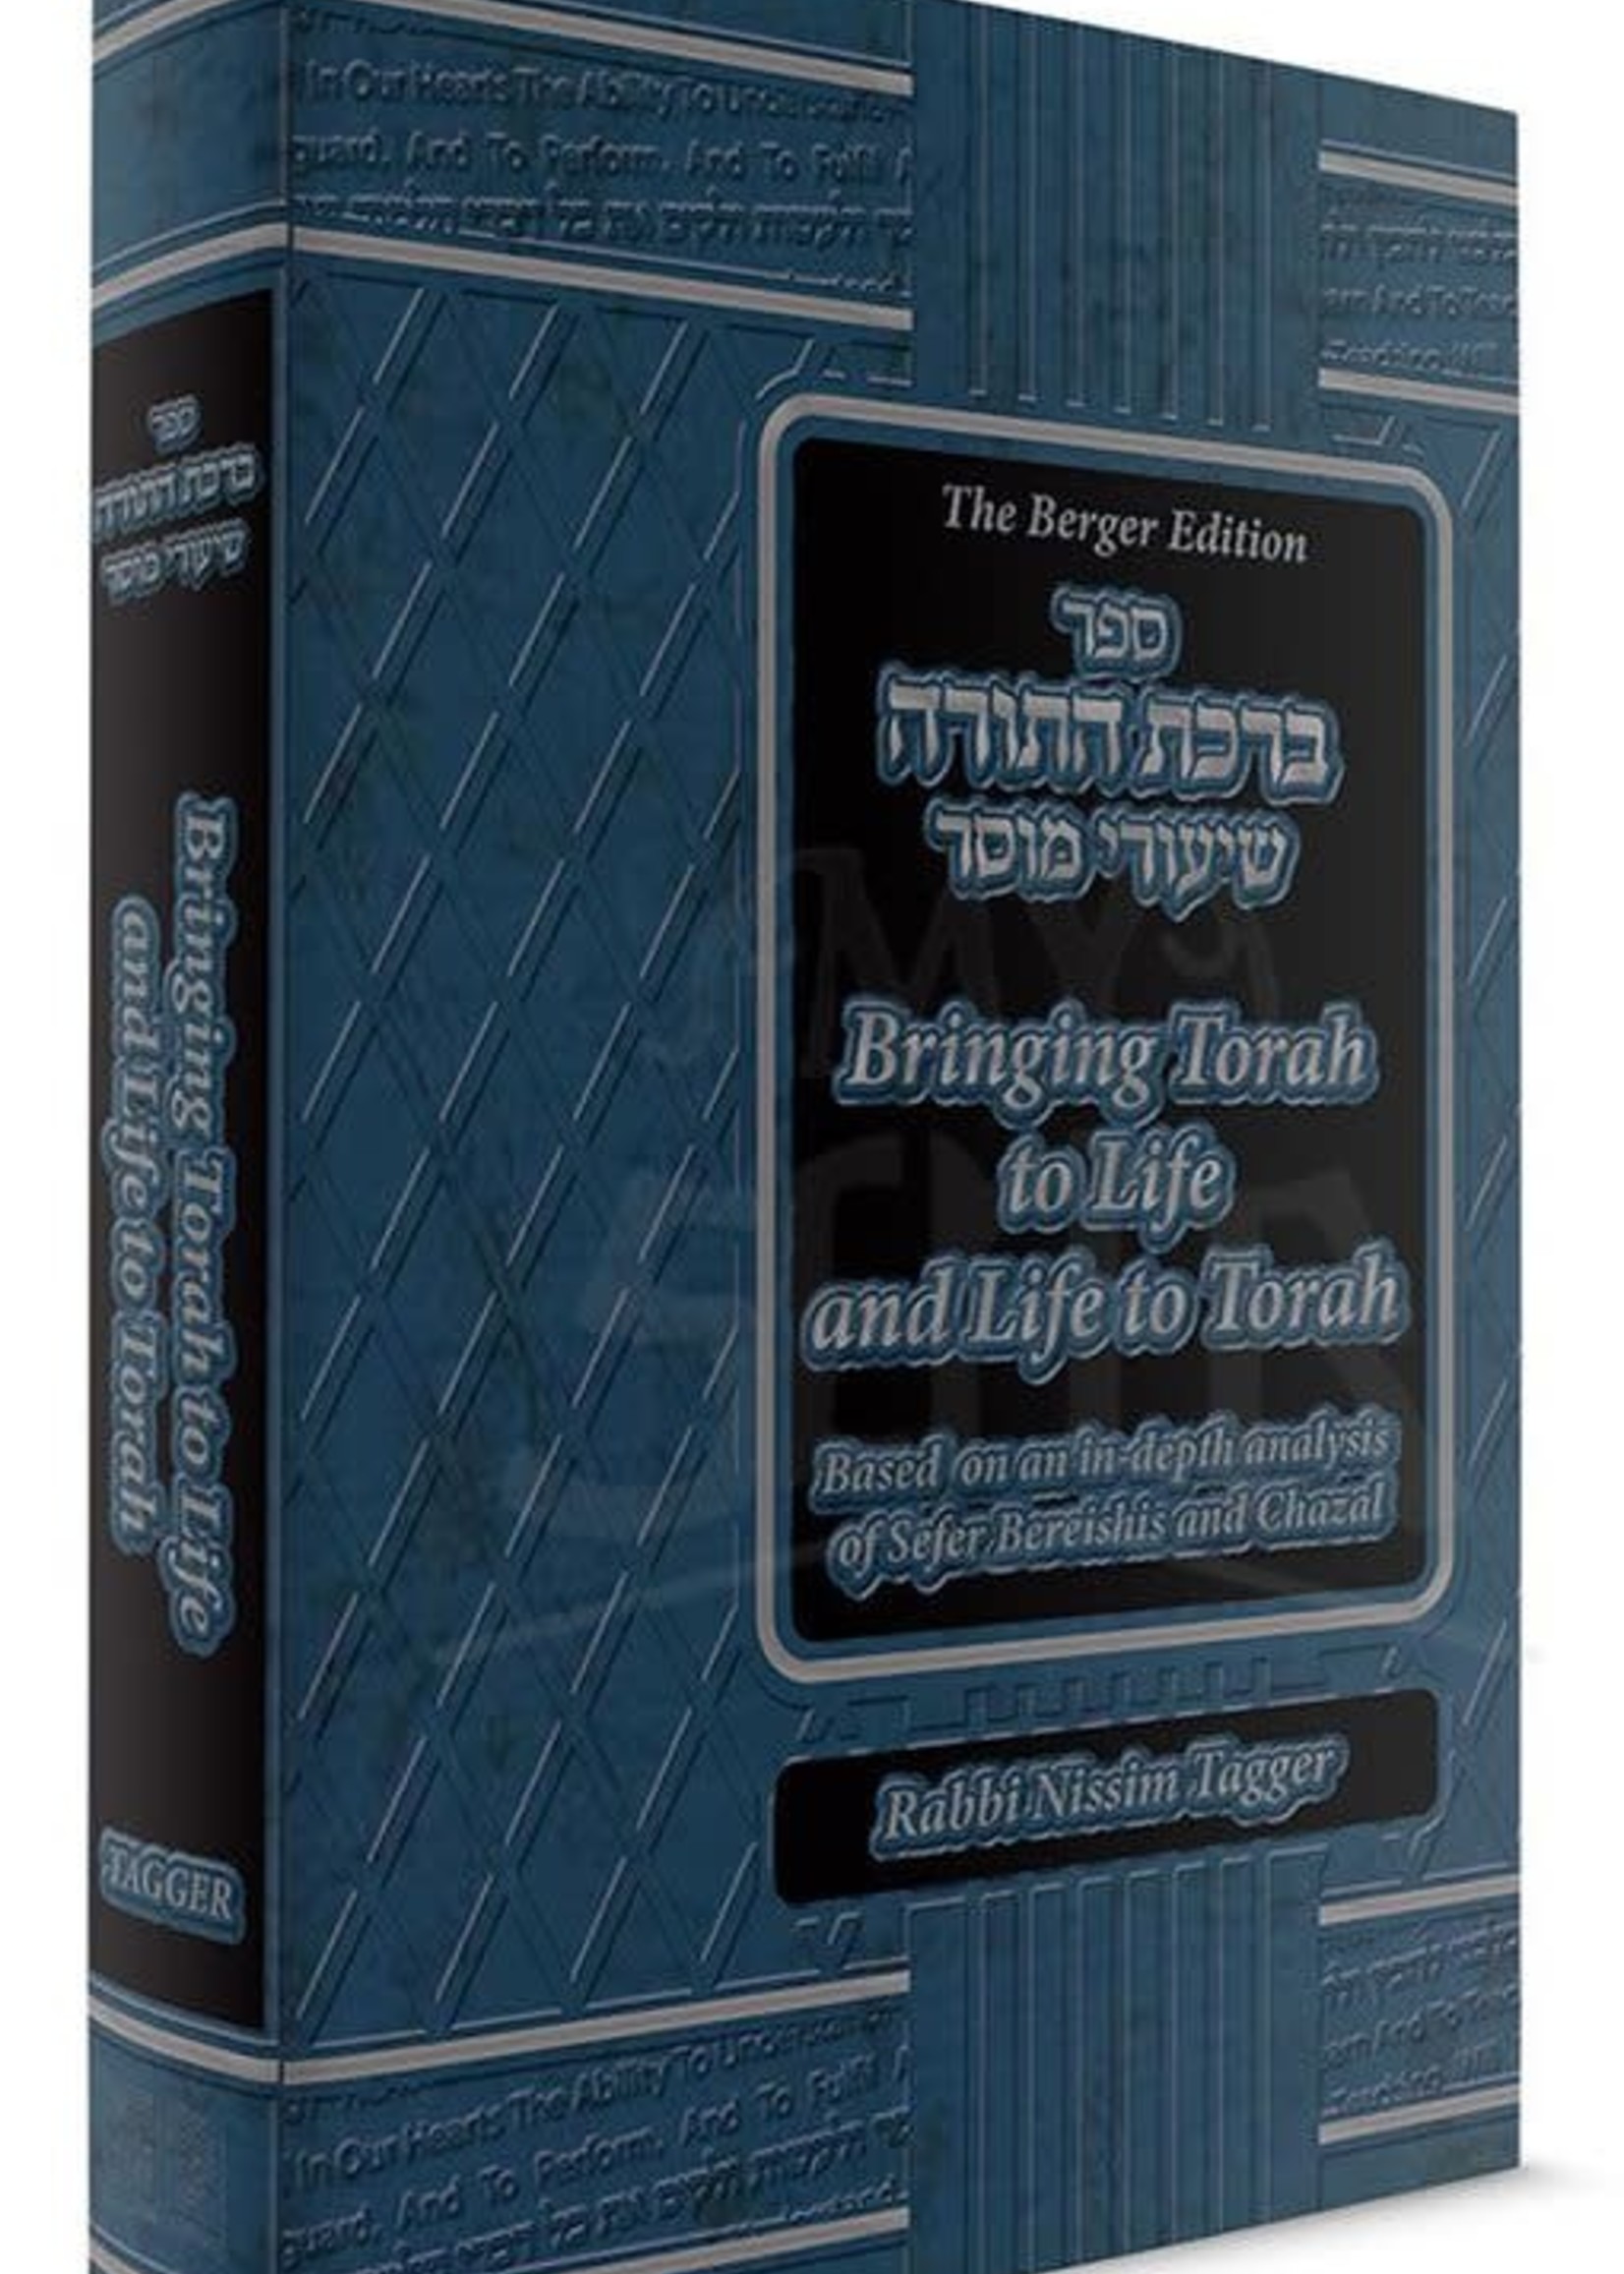 Sefer Birchas Hatorah - Bringing Torah to Life and Life to Torah